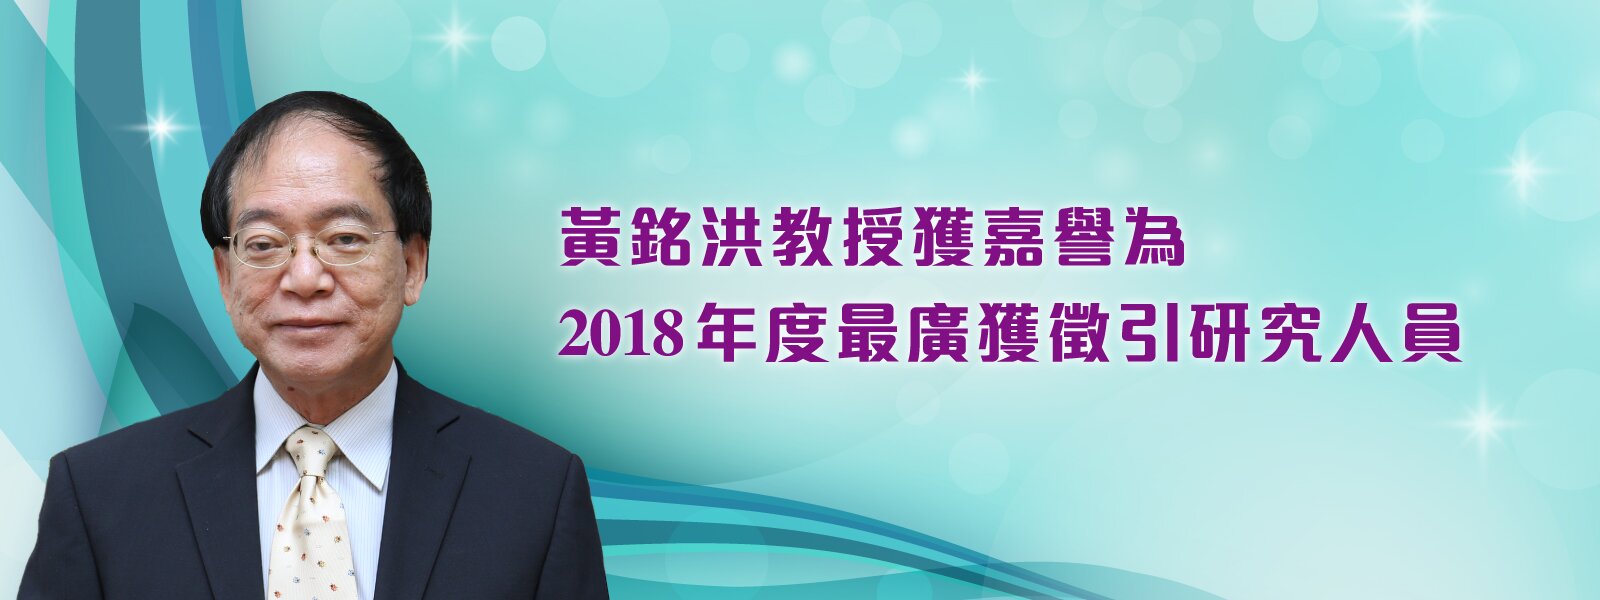 黃銘洪教授獲嘉譽為2018年度最廣獲徵引研究人員